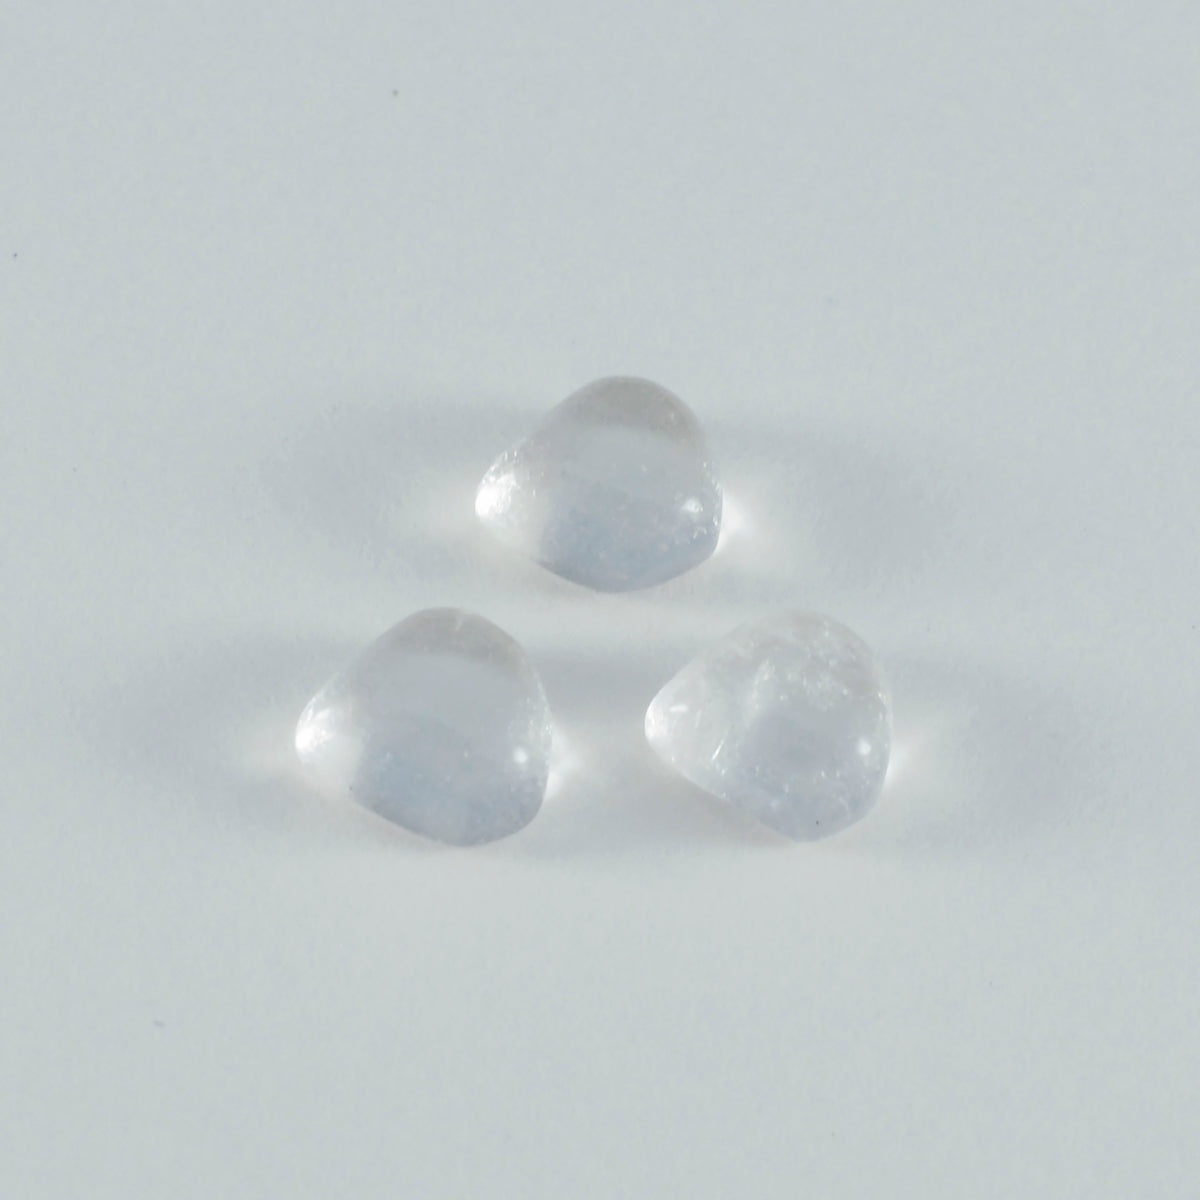 Riyogems 1 cabochon de quartz en cristal blanc 14 x 14 mm en forme de cœur a + 1 pierre précieuse de qualité